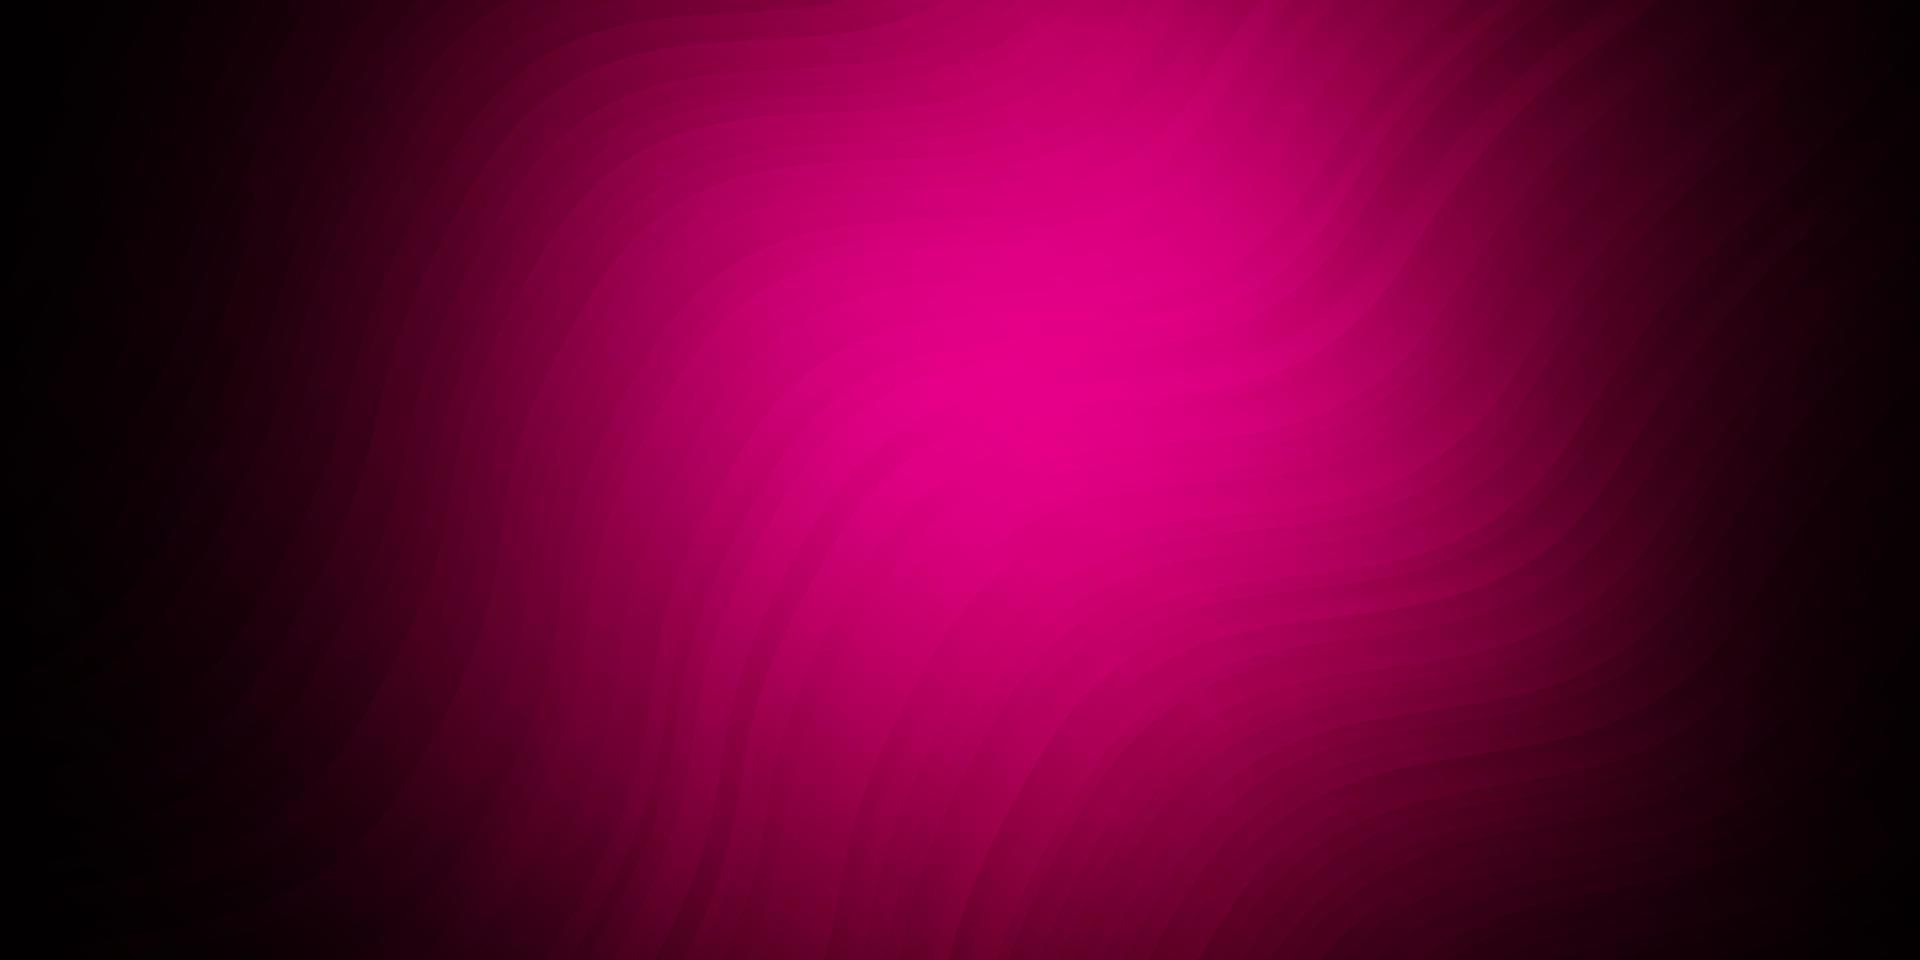 plantilla de vector de color rosa oscuro con líneas torcidas.